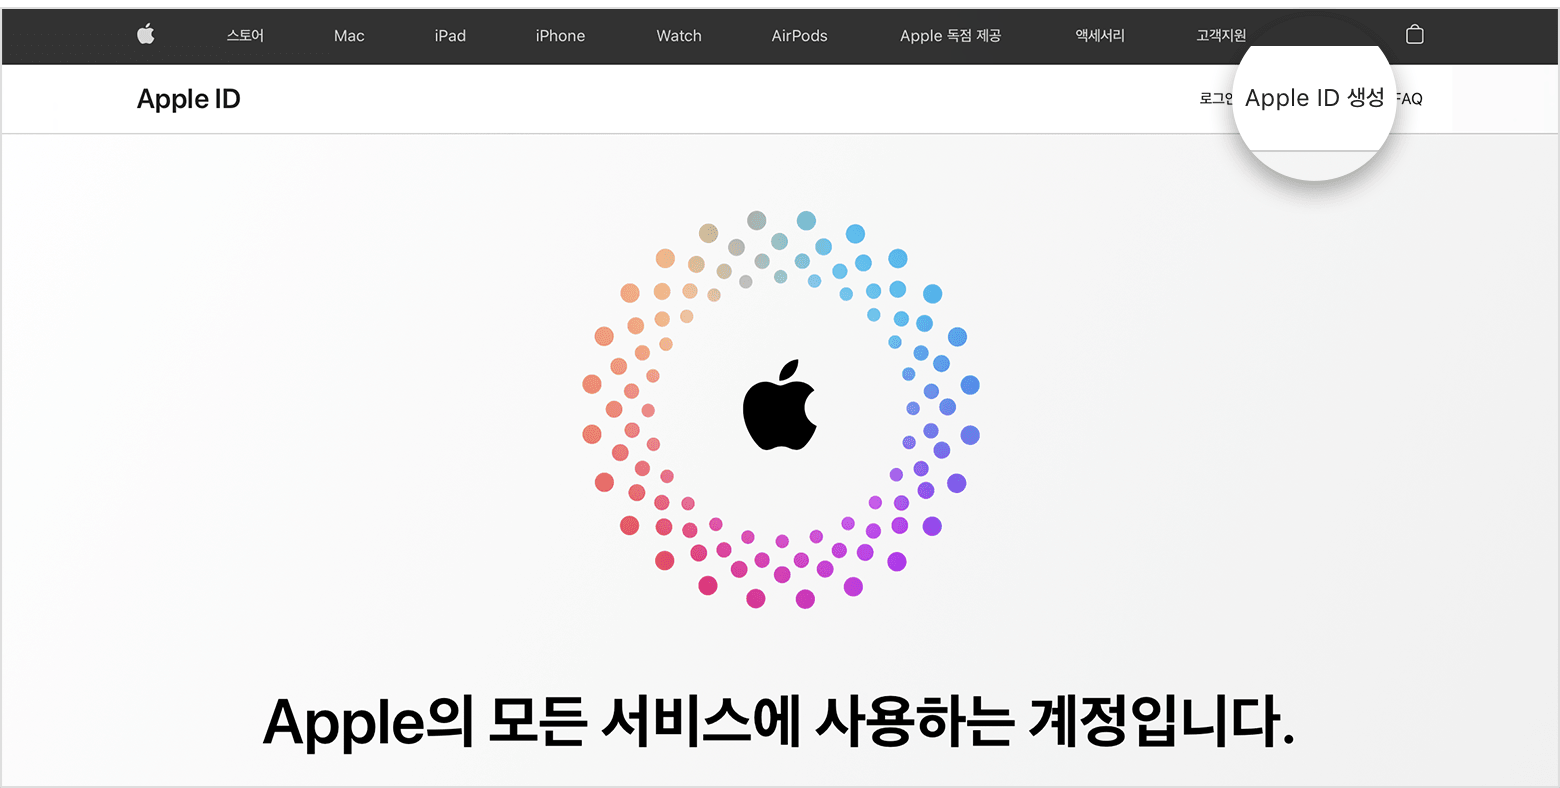 Apple ID 생성 링크가 표시된 웹 화면 